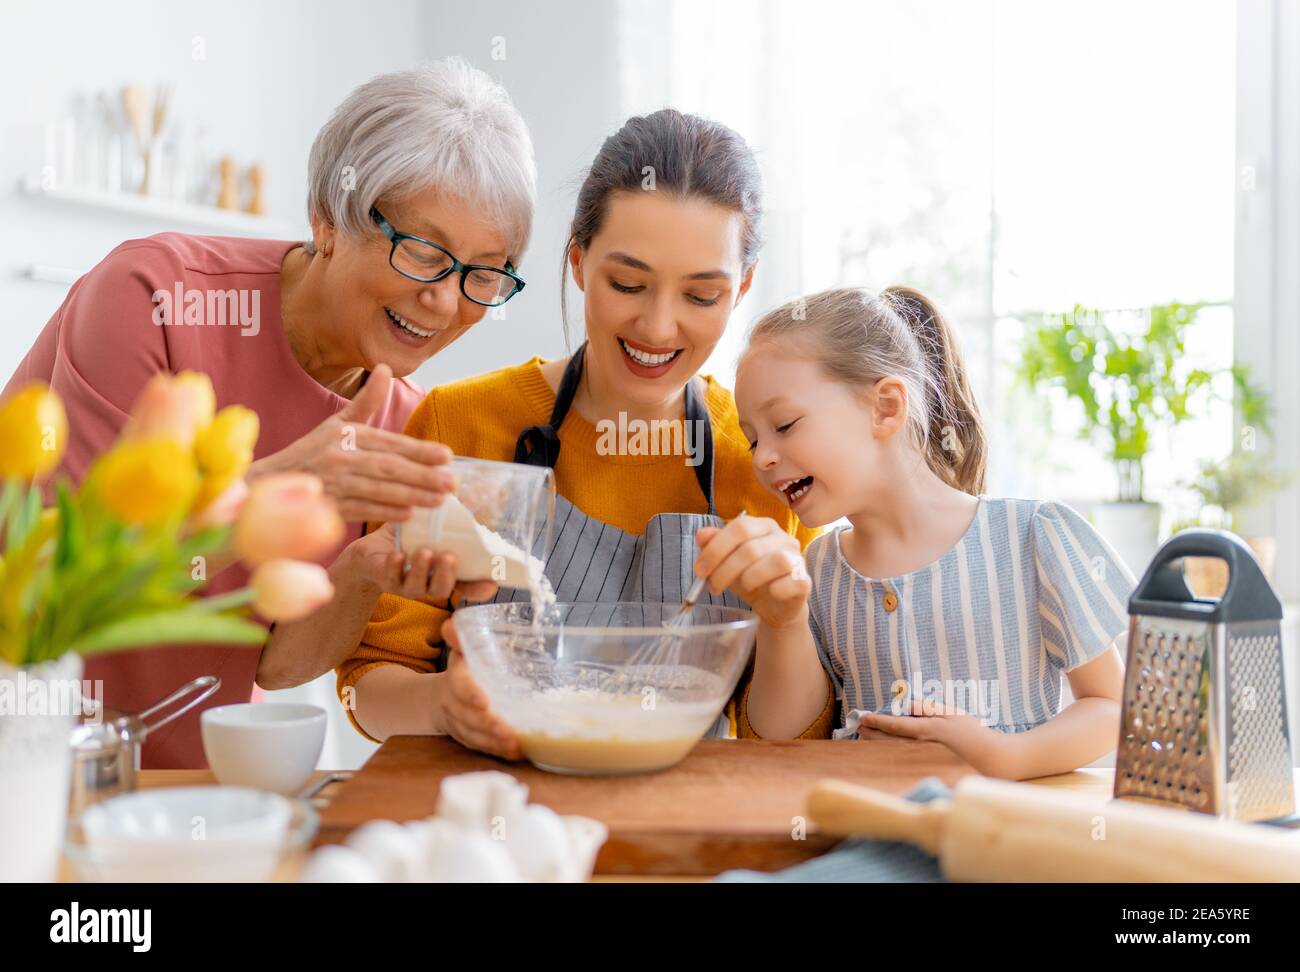 Une famille heureuse et aimante prépare la boulangerie ensemble. Granny, maman et enfant cuisent des biscuits et s'amusent dans la cuisine. Banque D'Images